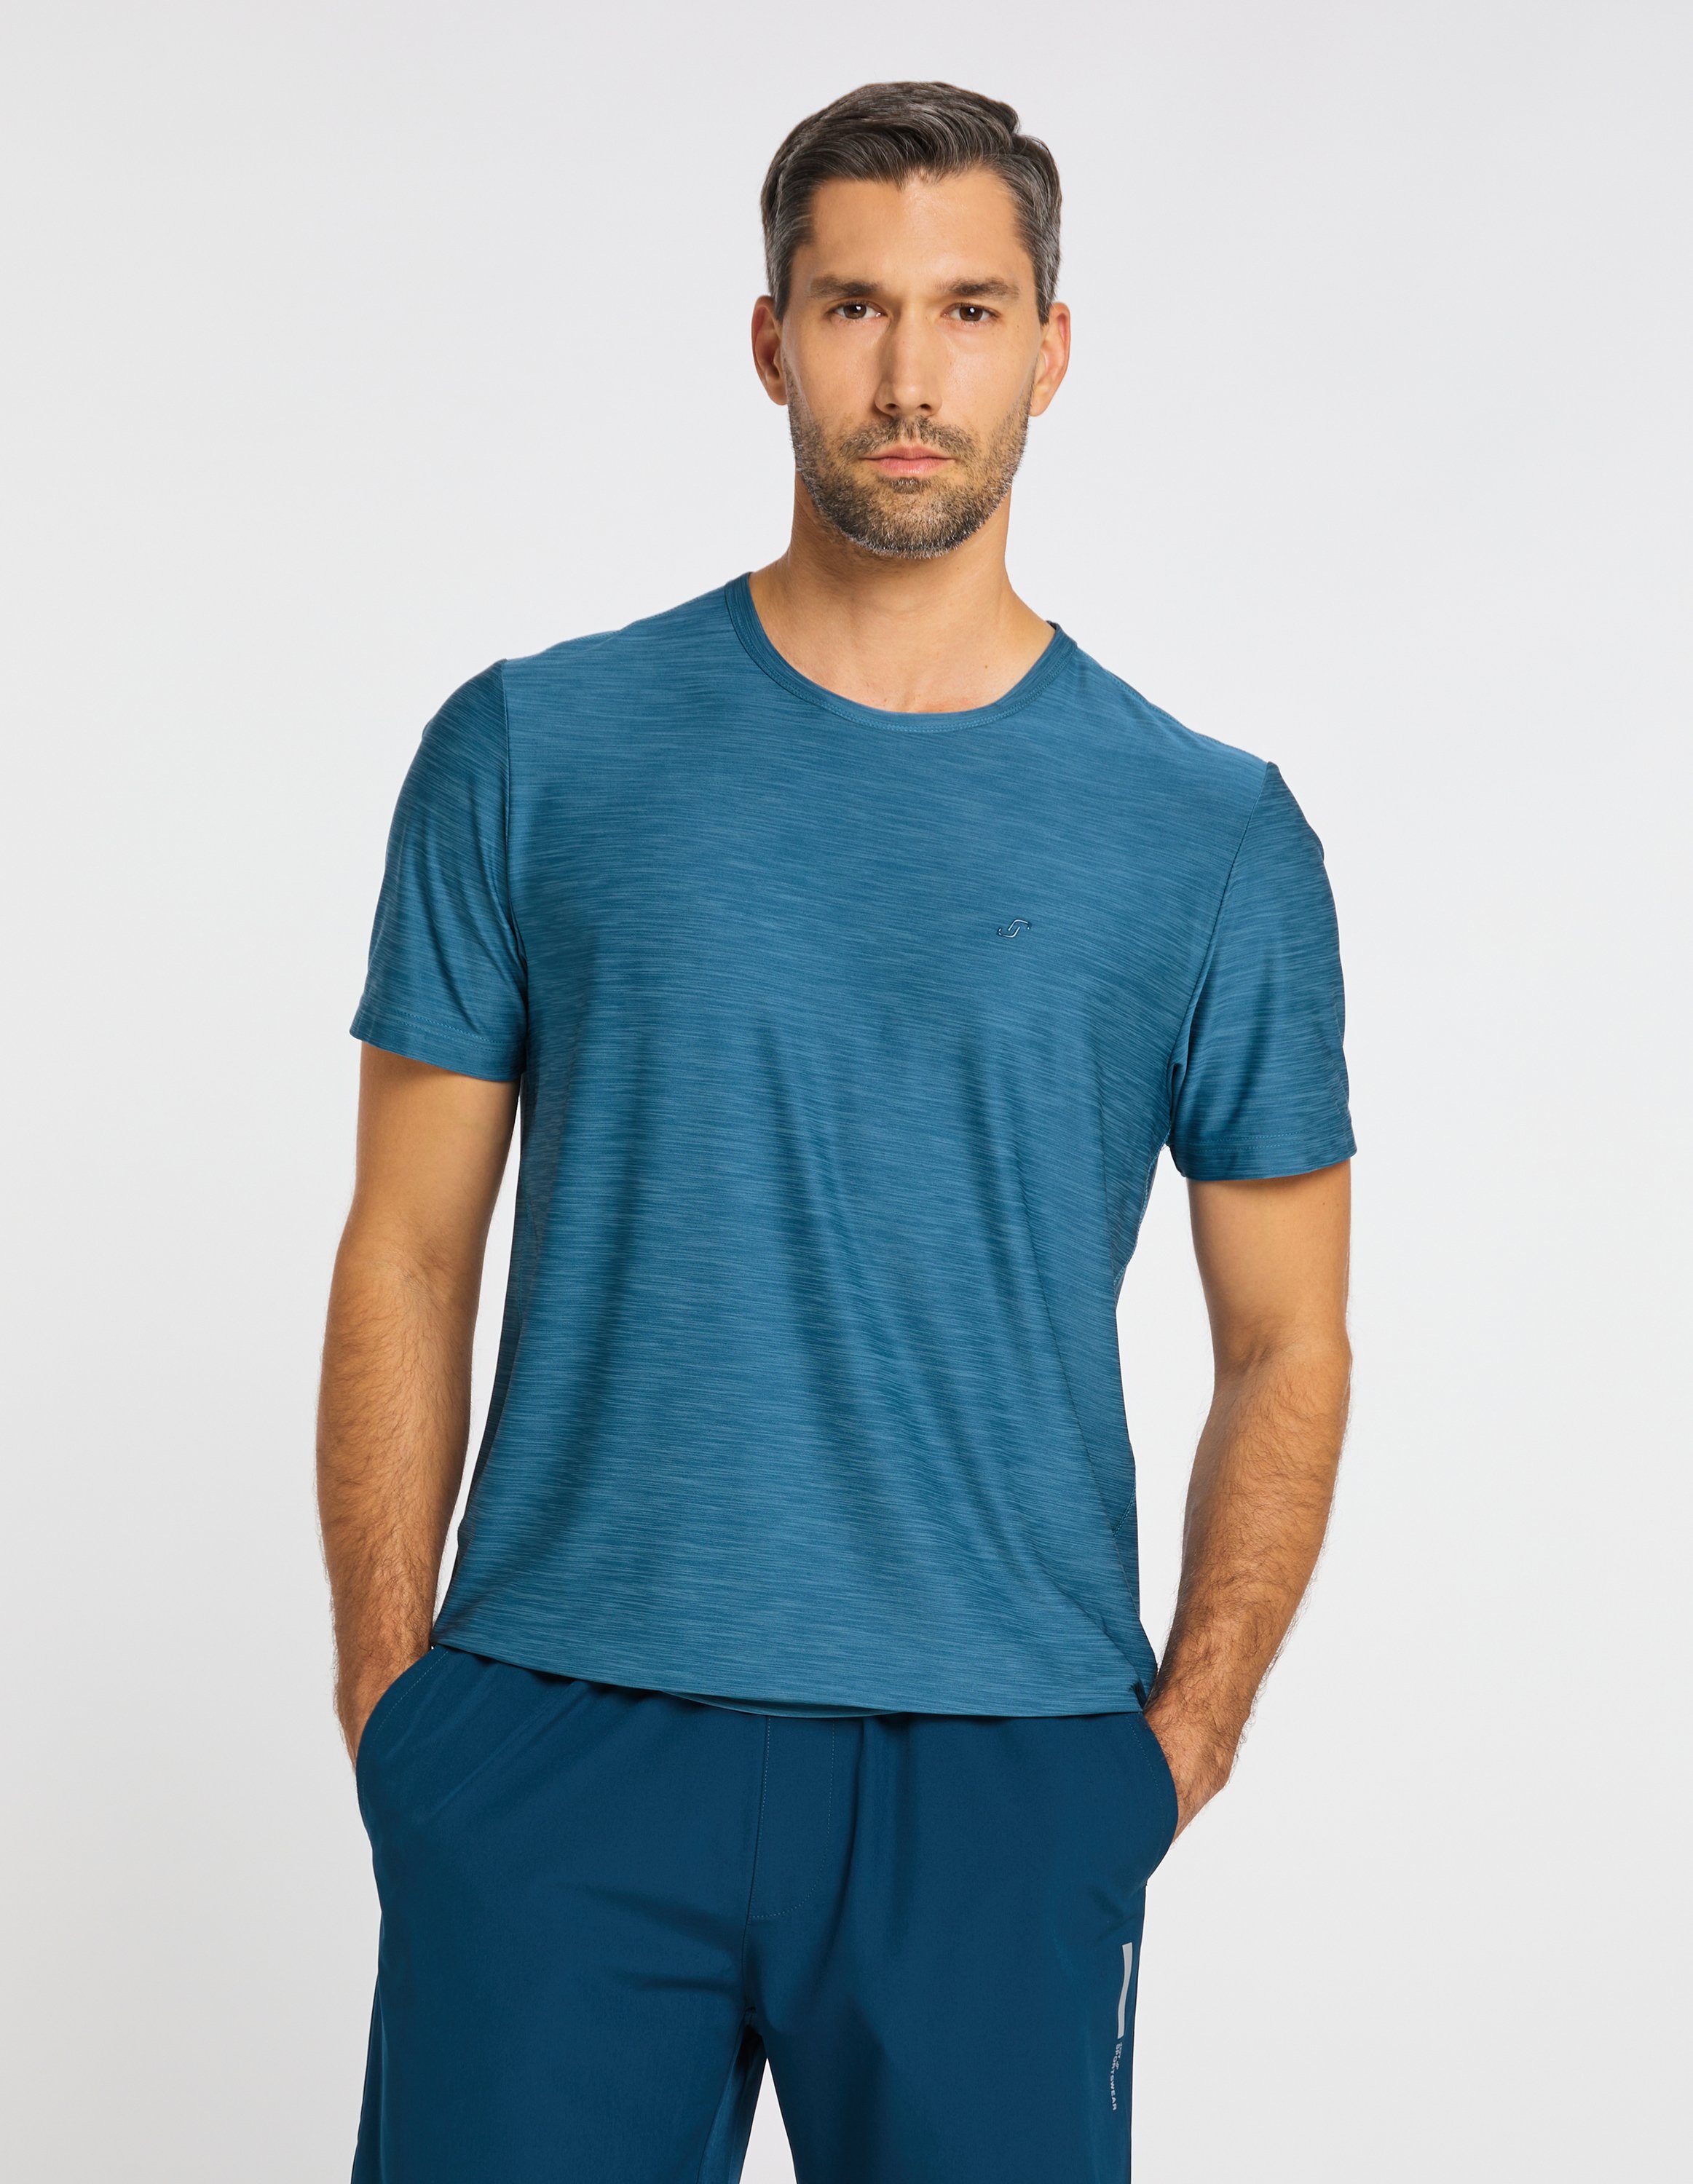 VITUS Joy blue metallic T-Shirt Sportswear T-Shirt melange